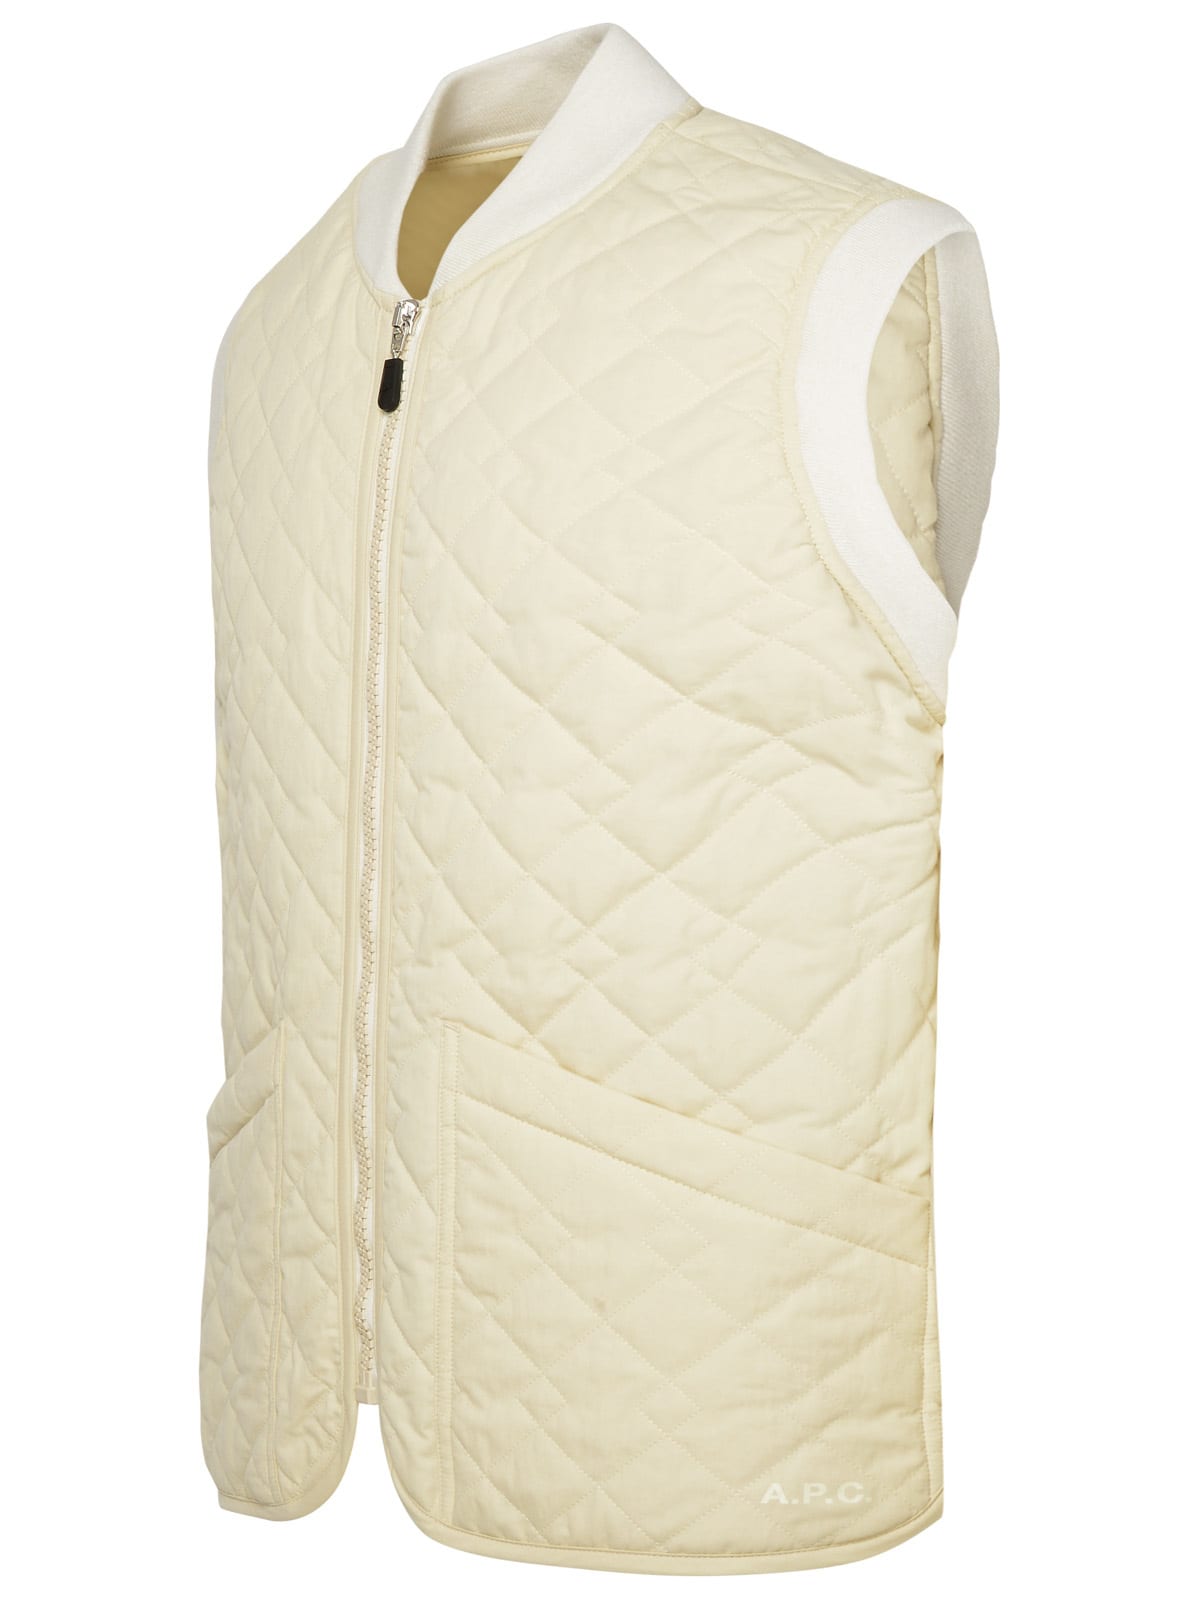 Shop Apc Ivory Cotton Blend Vest In Cream